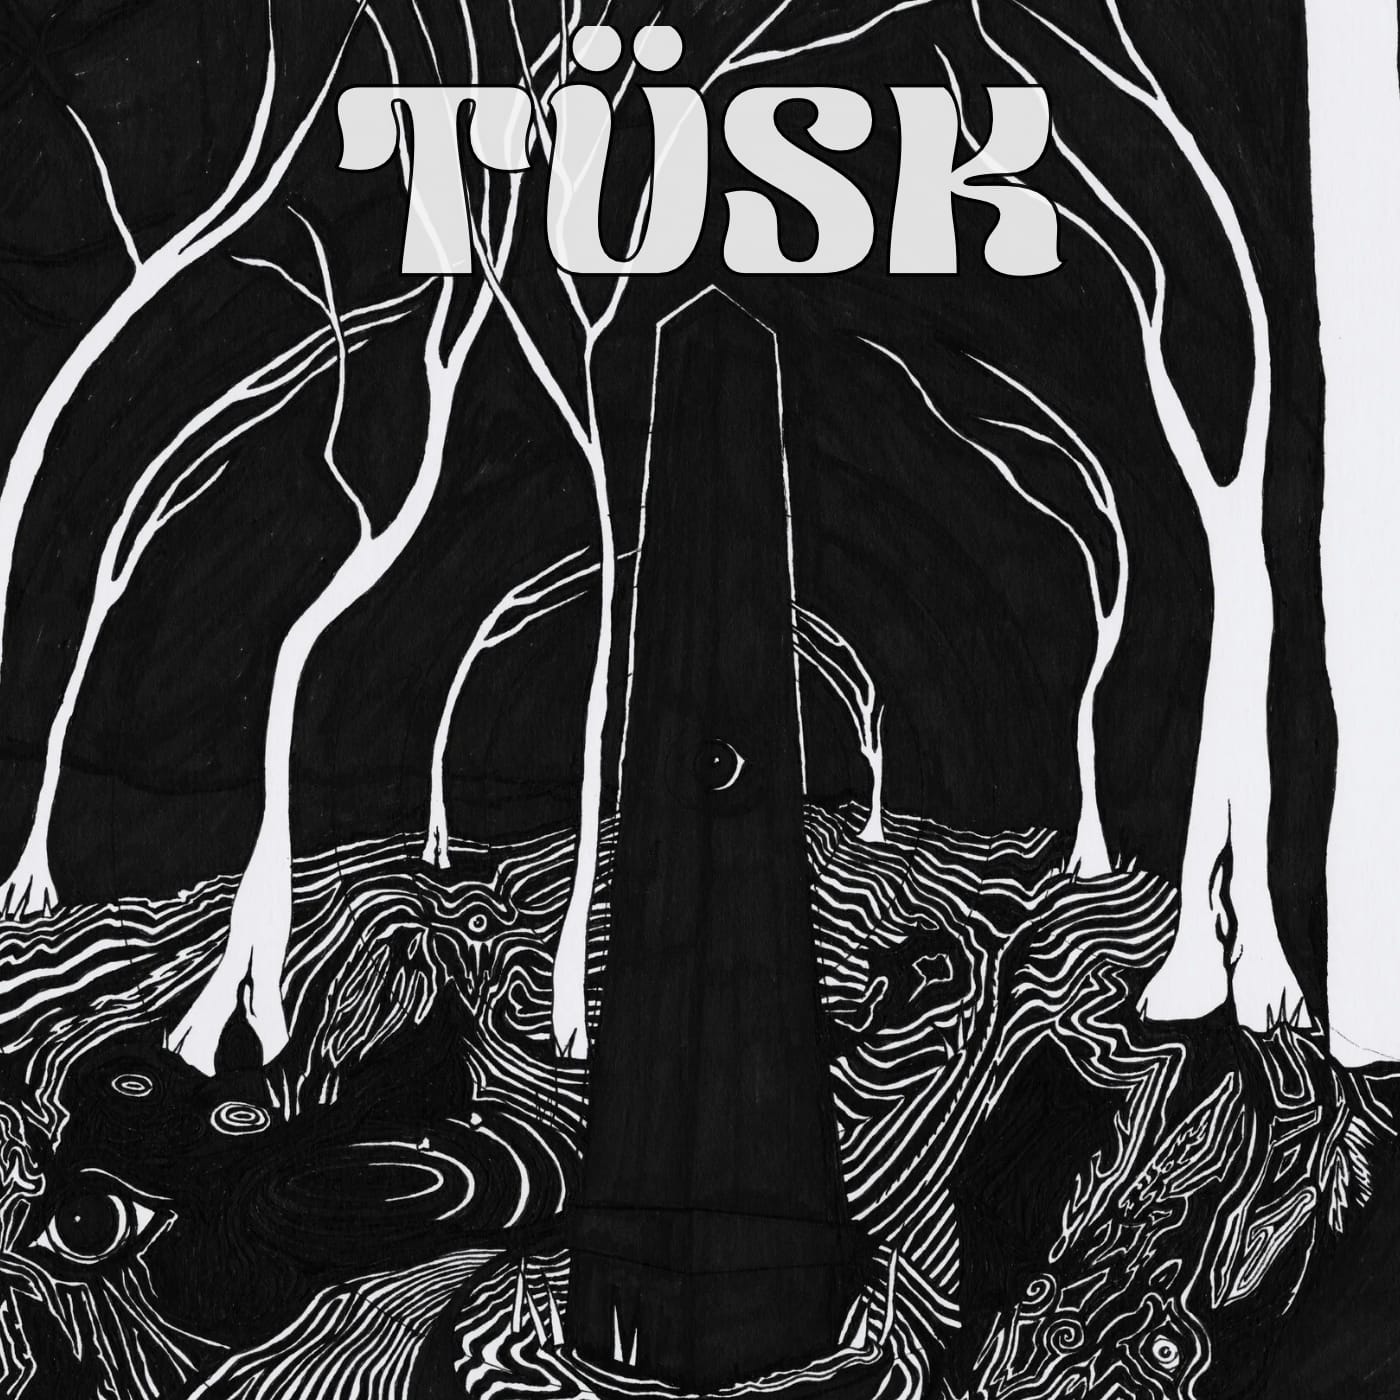 Tusk portal ep cover